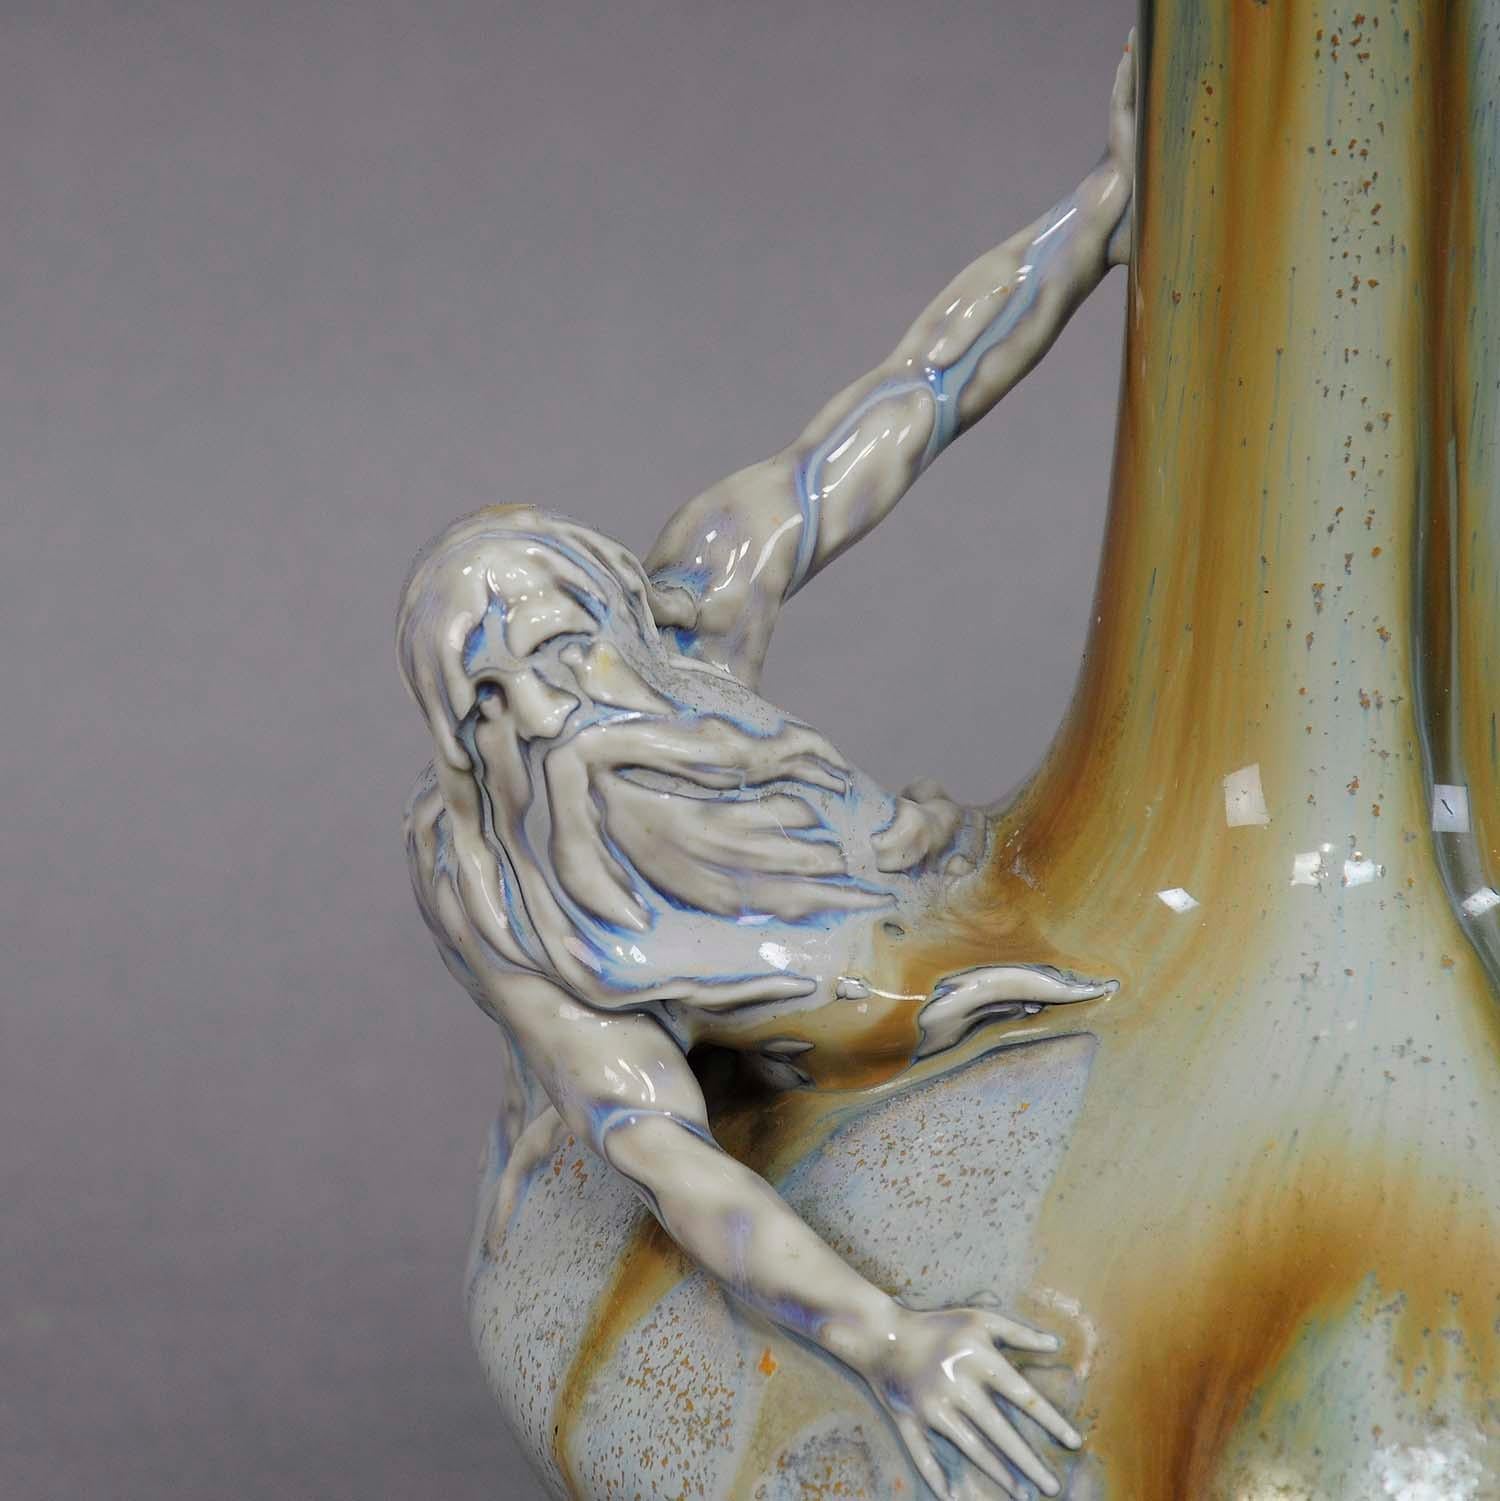 Eine schöne antike Vase aus Porzellan im typischen Jugendstil. Mit einer hervorstehenden Neptun-Skulptur auf dem Korpus. Mit blauer und brauner Glasur. Hergestellt von Schierholz & Sohn, Plaue, Deutschland ca. 1900.

Maße: Höhe: 8,86